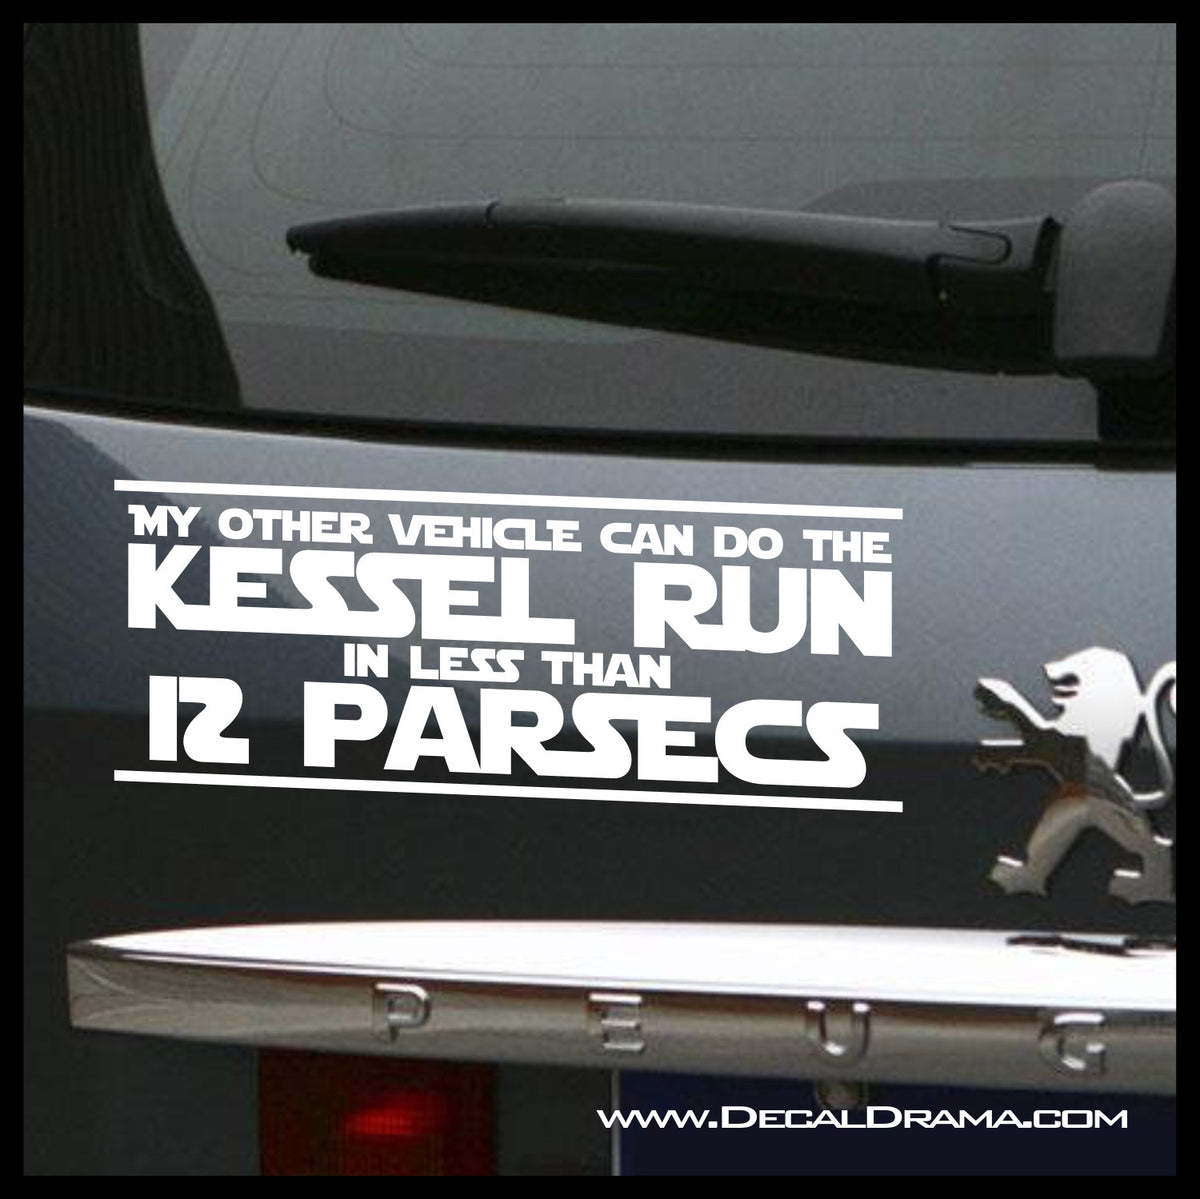 Kessel Run In Less Then 12 Parsecs, Star Wars-Inspired Fan Art Vinyl D